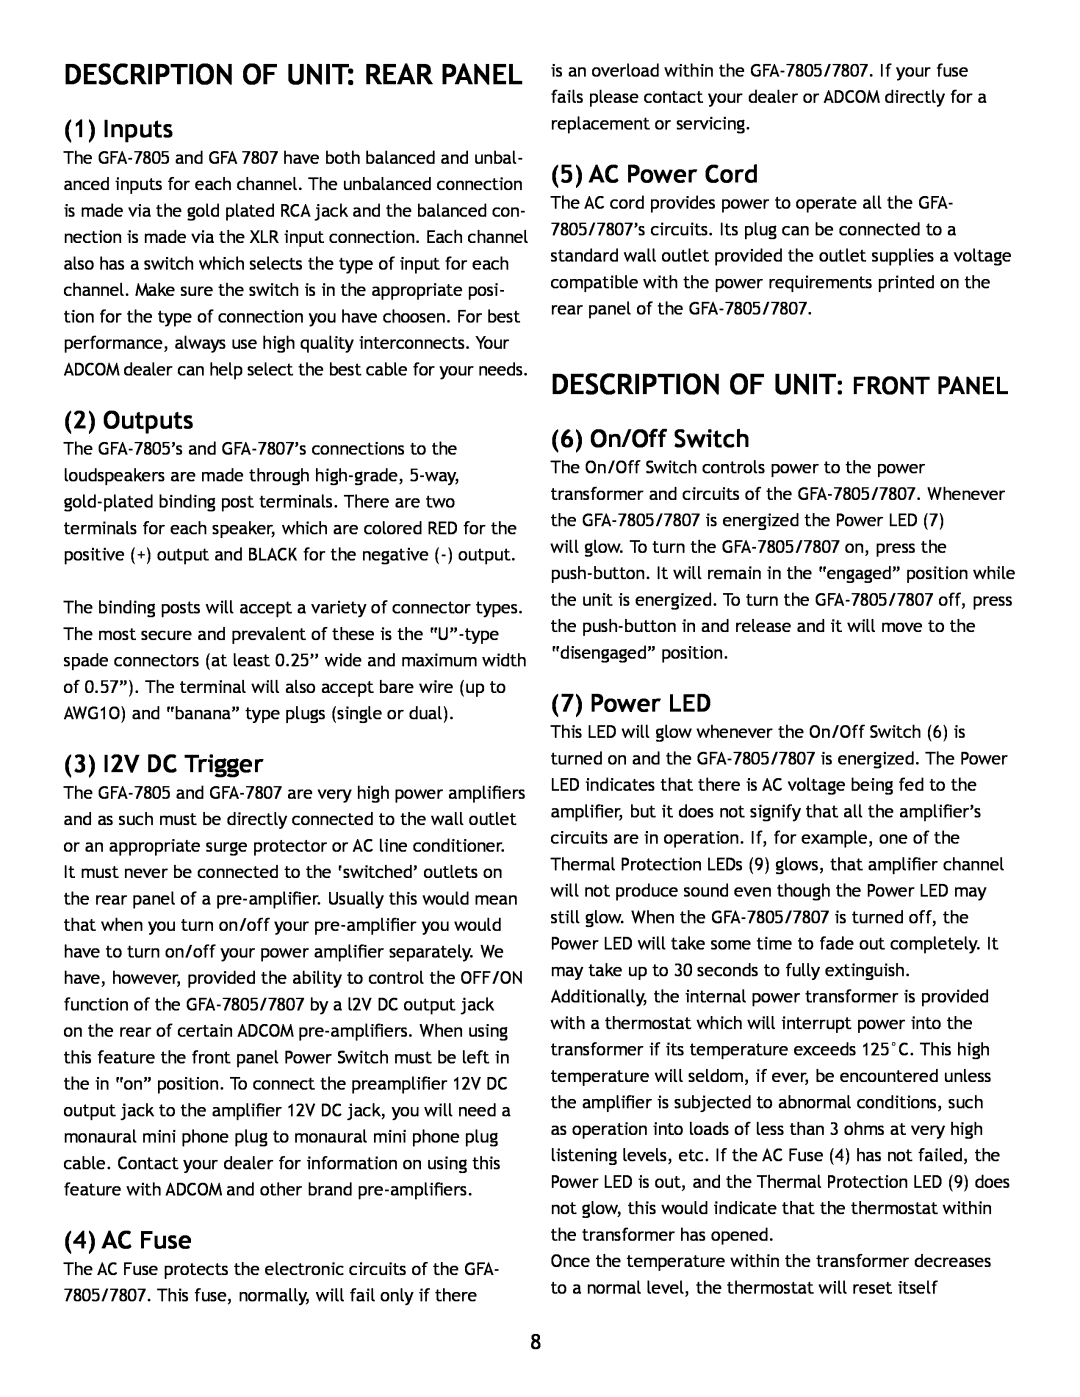 Adcom GFA7807 Description Of Unit Rear Panel, Description Of Unit Front Panel, Inputs, Outputs, 3 I2V DC Trigger, AC Fuse 